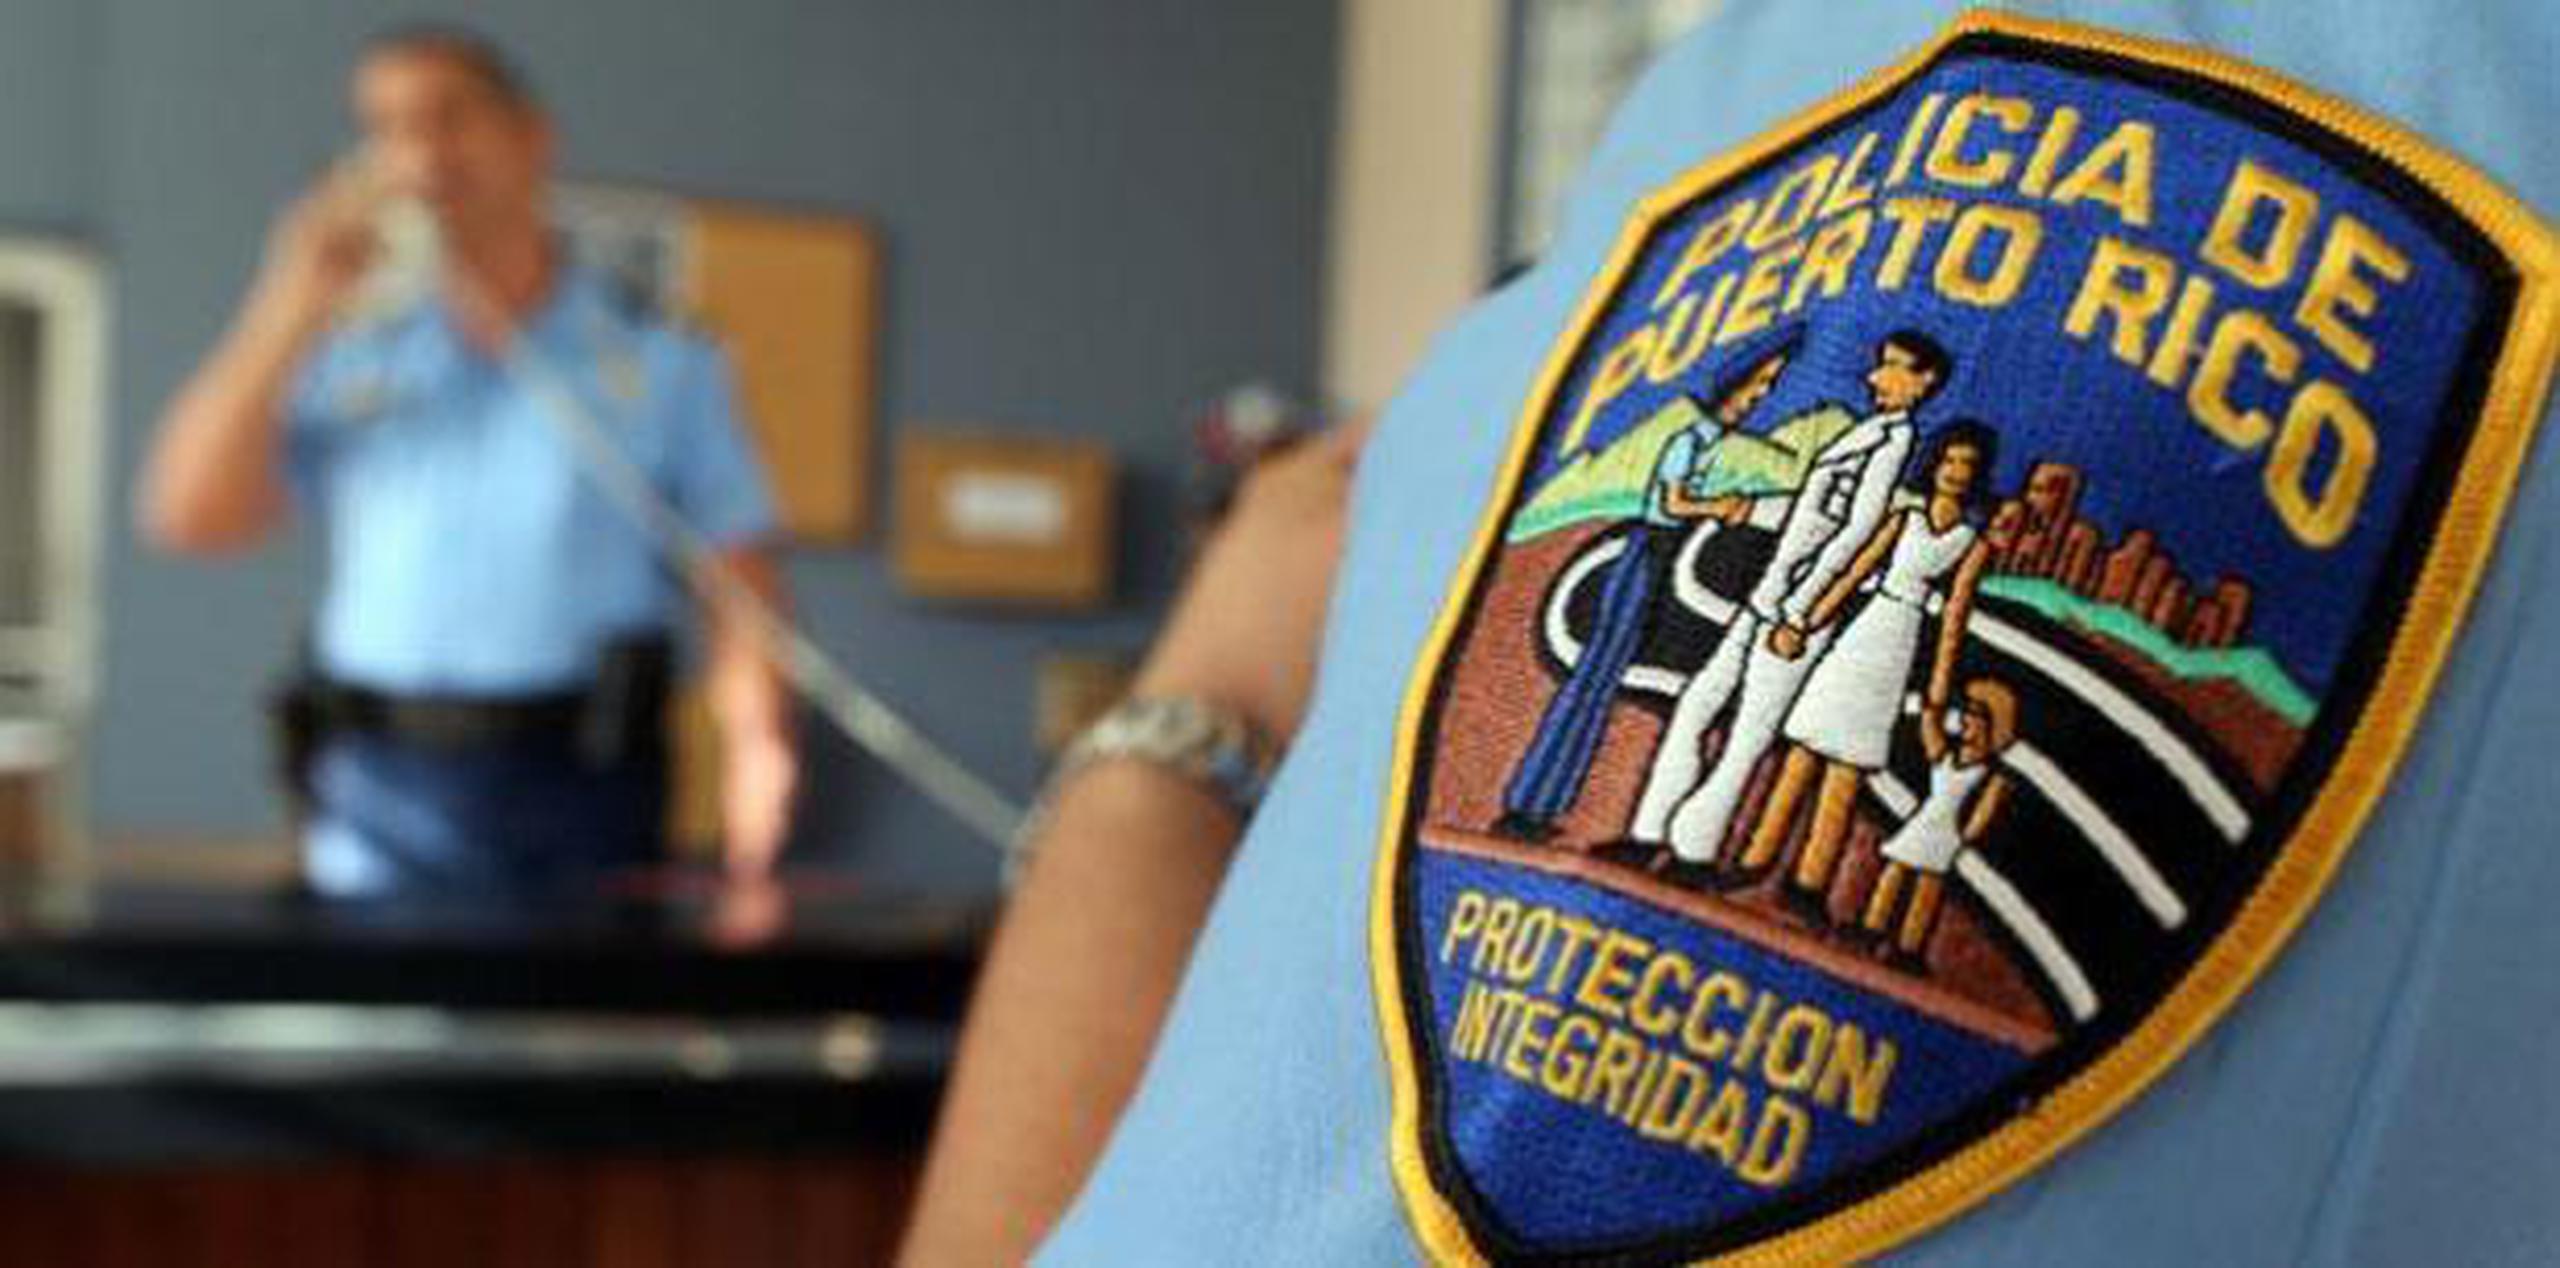 La División de Delitos contra Propiedad del área del Caguas se hicieron a cargo de la investigación. (Archivo)